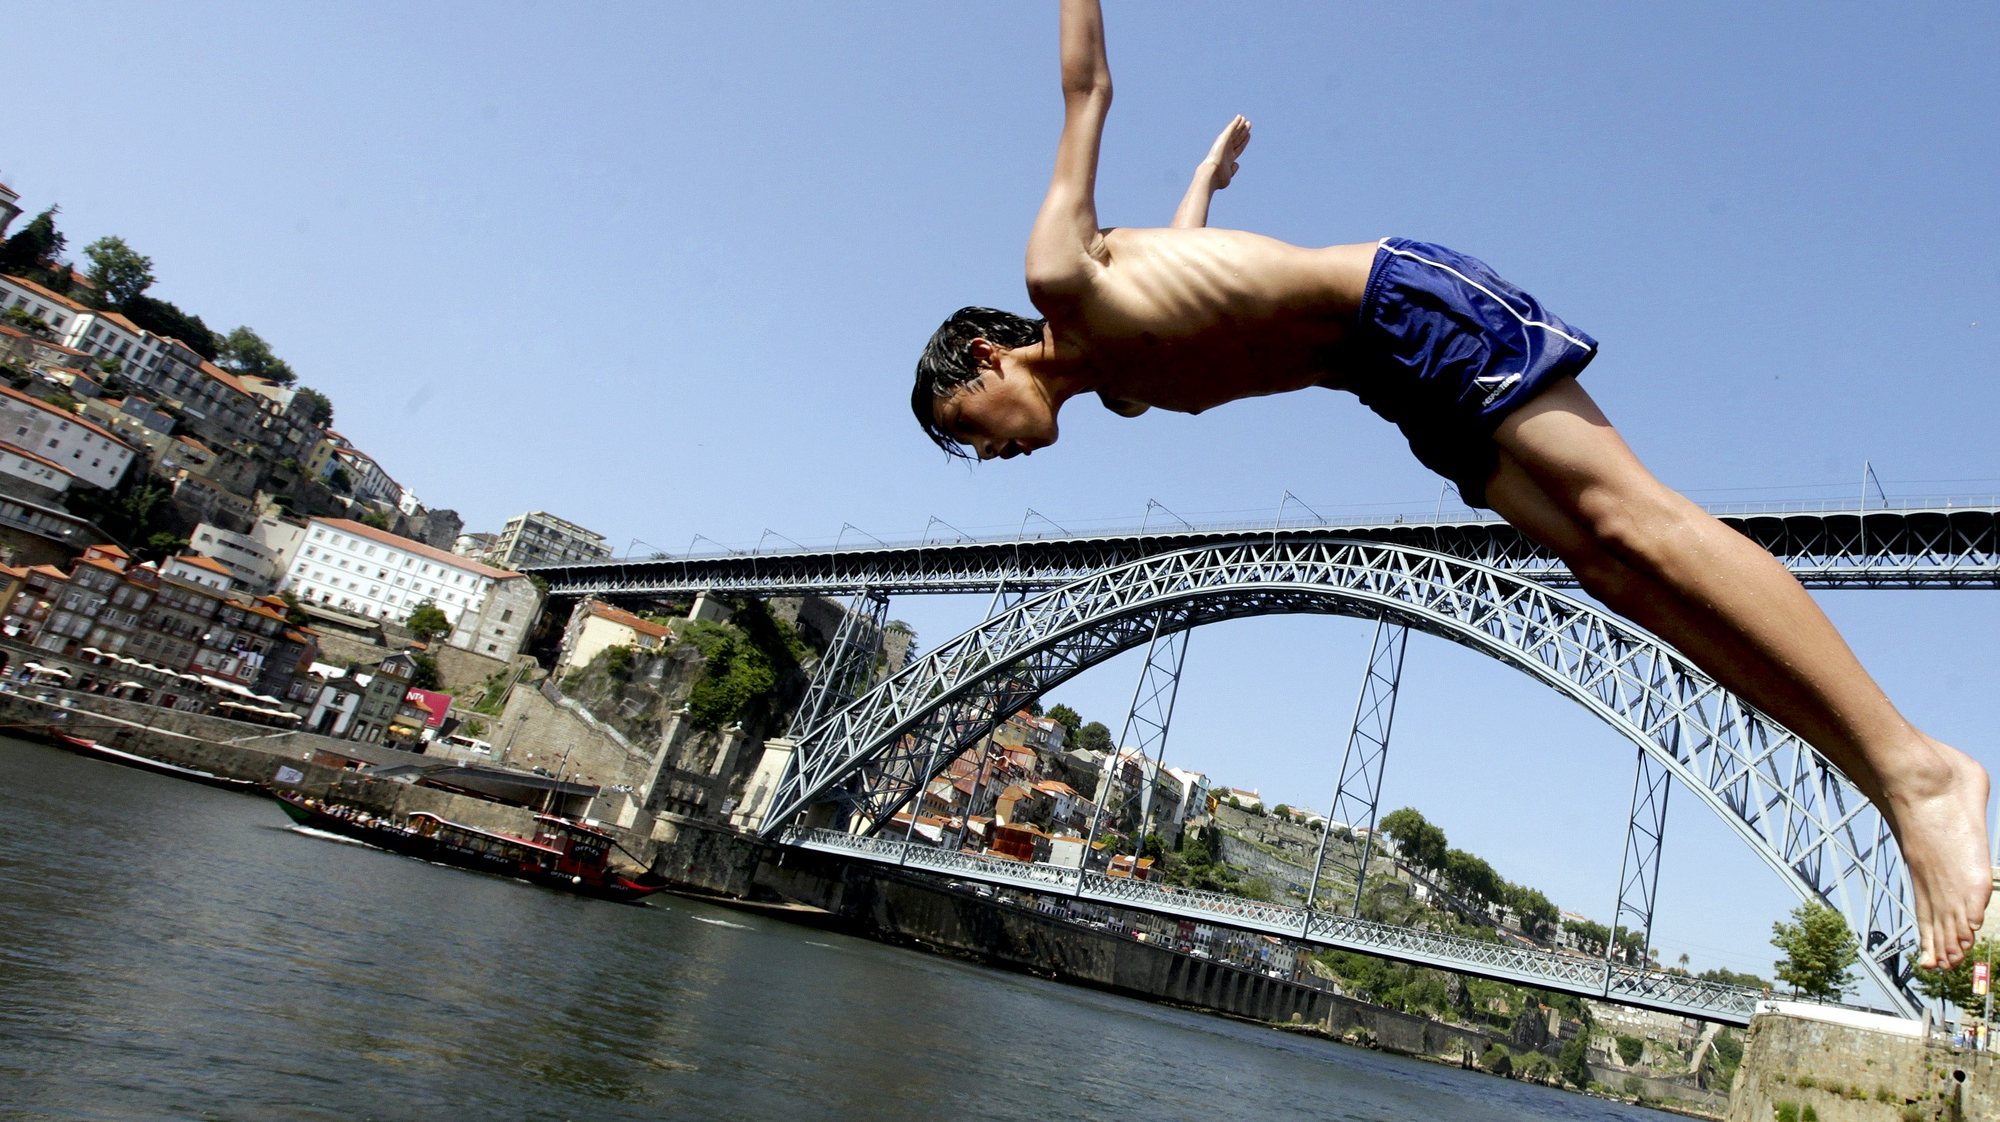 Um rapaz salta para o rio Douro no Porto, 31 de maio de 2012. Temperaturas elevadas na cidade do Porto levaram crianças a tomar banho no rio Douro. JOSE COELHO / LUSA